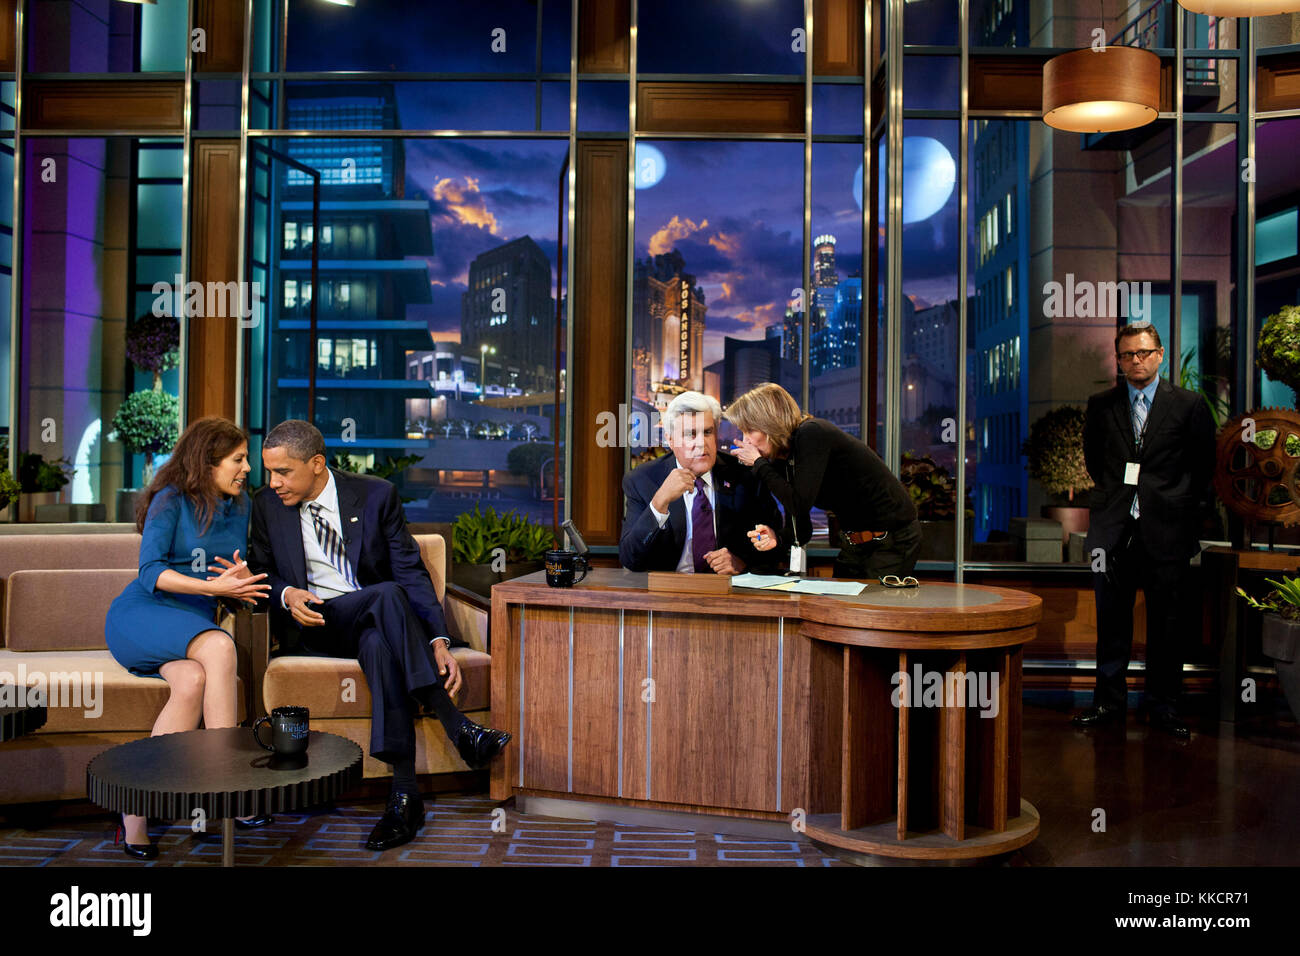 Le président barack obama parle avec co-producteur michele tasoff au cours d'une pause dans l'enregistrement "The Tonight Show with Jay Leno" sur NBC Studios de Burbank, Californie, oct. 25, 2011. Banque D'Images